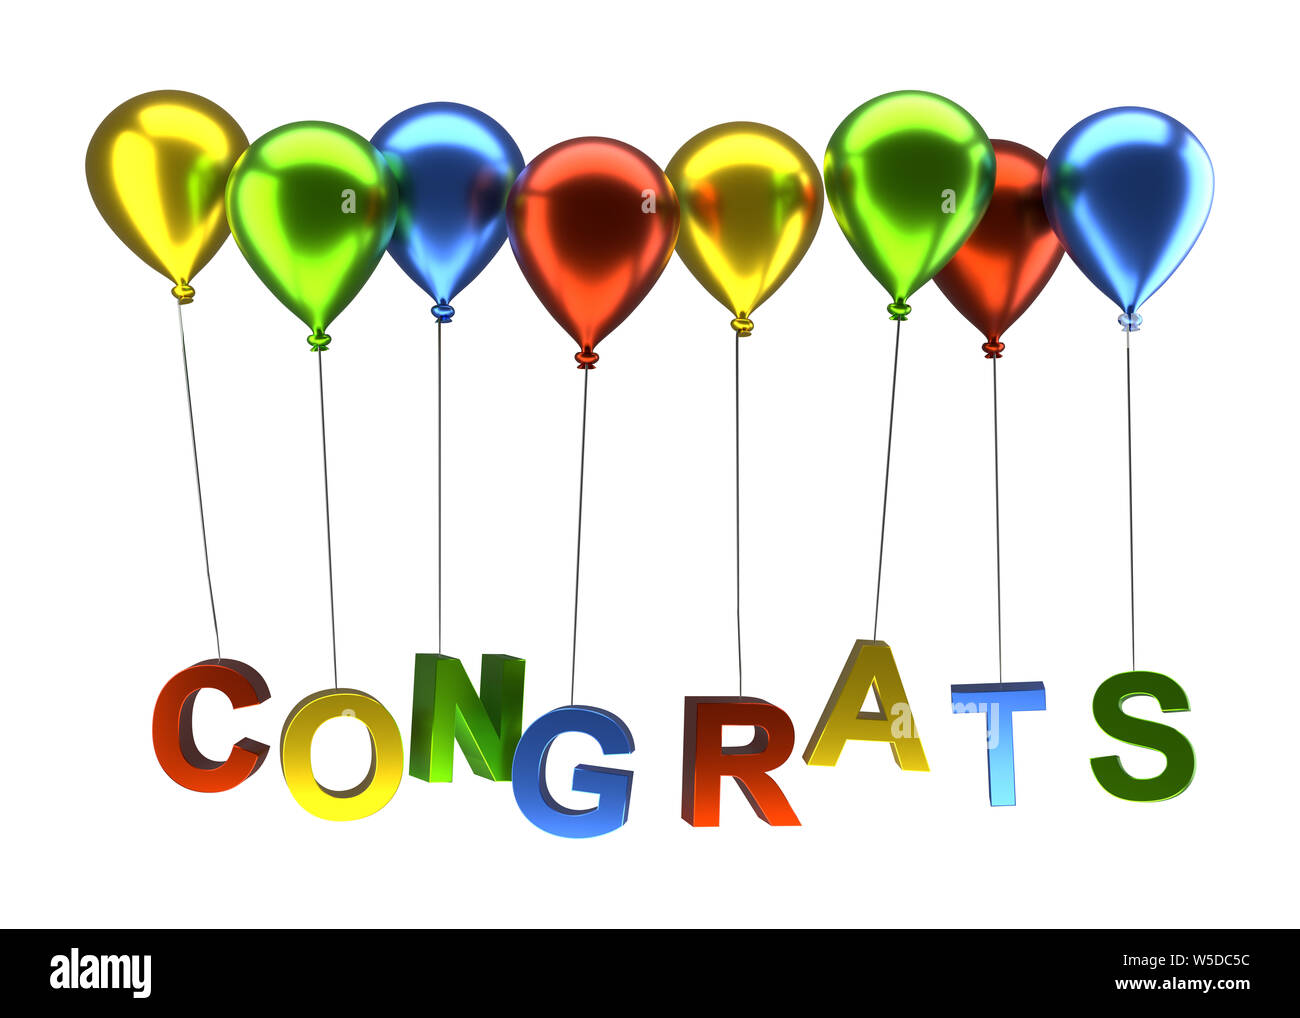 Bunte Luftballons mit dem Wort congrats auf einem weißen Hintergrund, 3D-Rendering Stockfoto